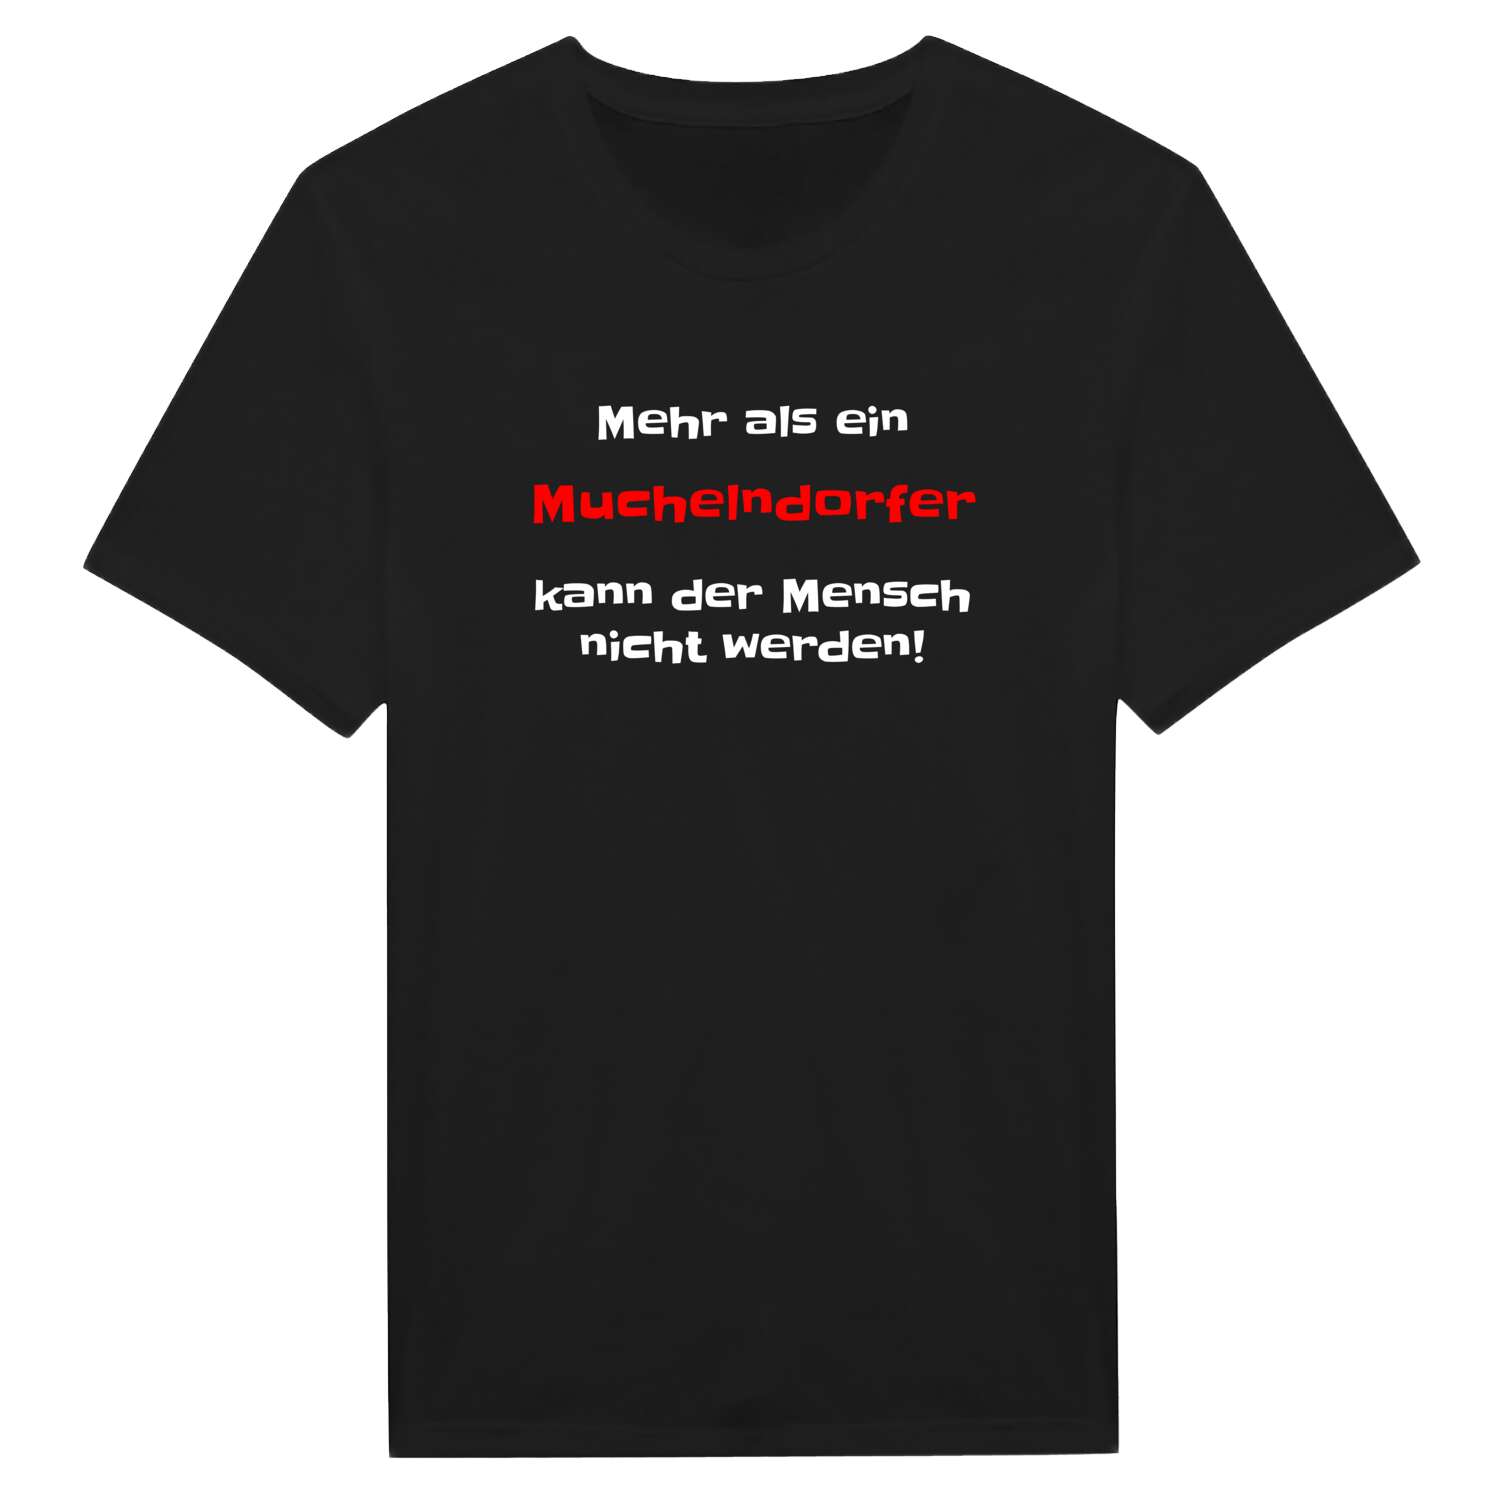 Muchelndorf T-Shirt »Mehr als ein«